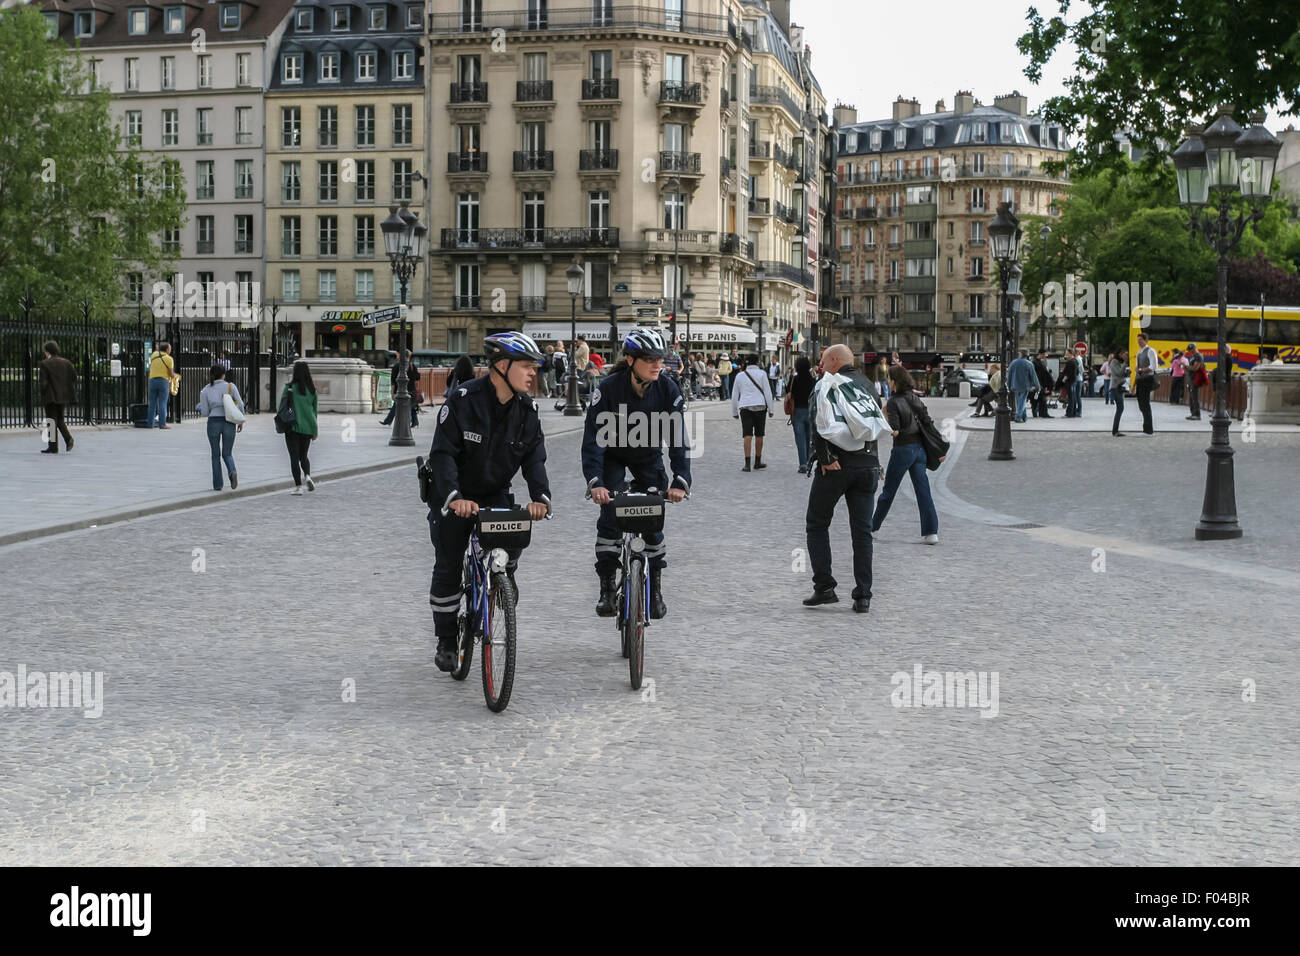 Gli ufficiali di polizia su biciclette, PARIS, Francia - circa 2009. Due poliziotti - equitazione biciclette - di pattuglia di Parigi. Foto Stock